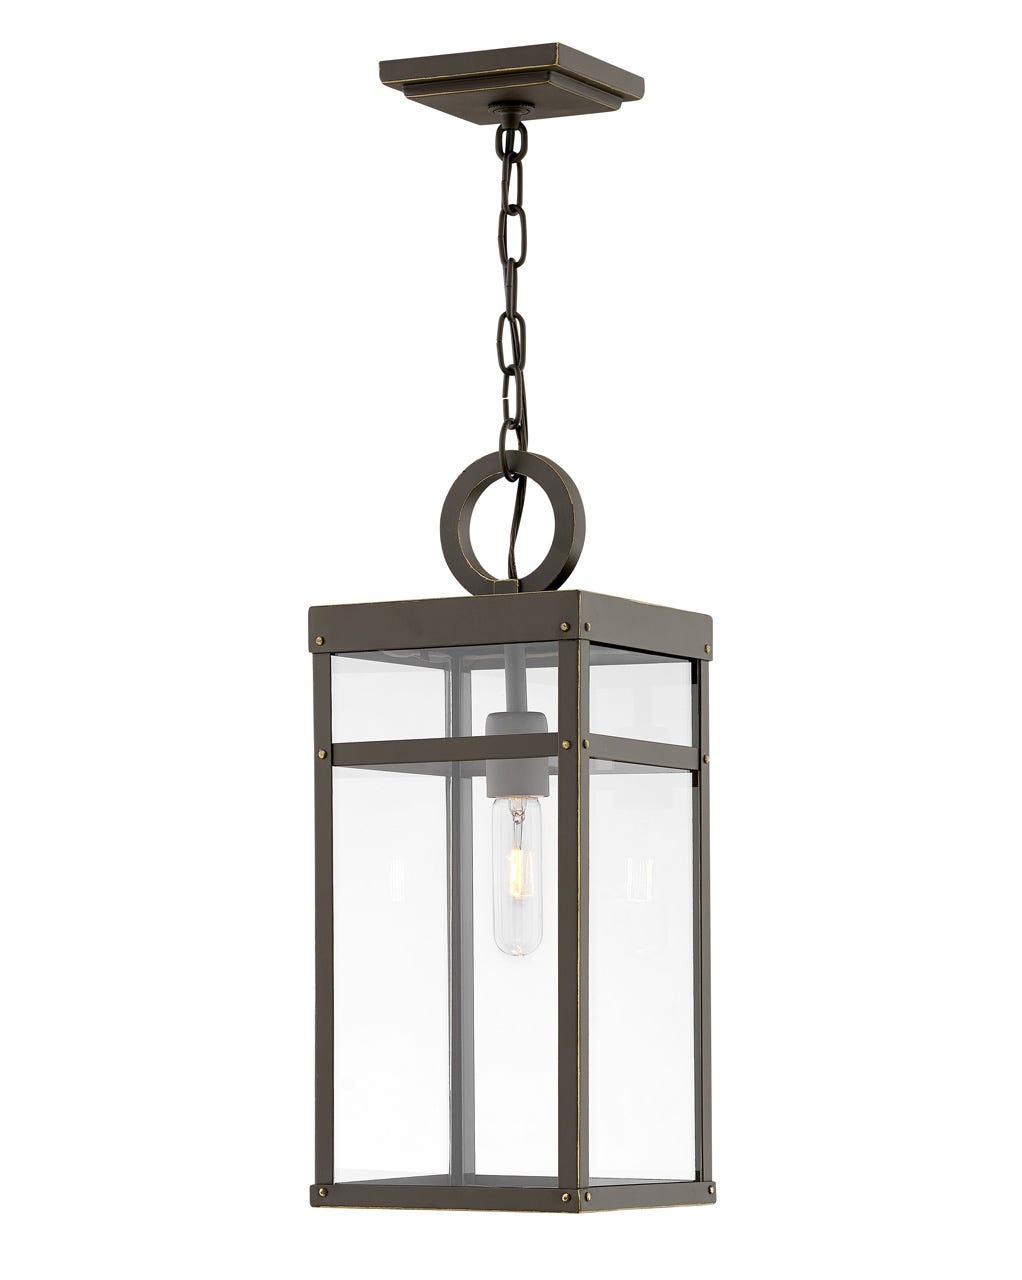 OUTDOOR PORTER Hanging Lantern Outdoor Light Fixture l Hanging Hinkley Oil Rubbed Bronze 7.5x7.5x19.0 